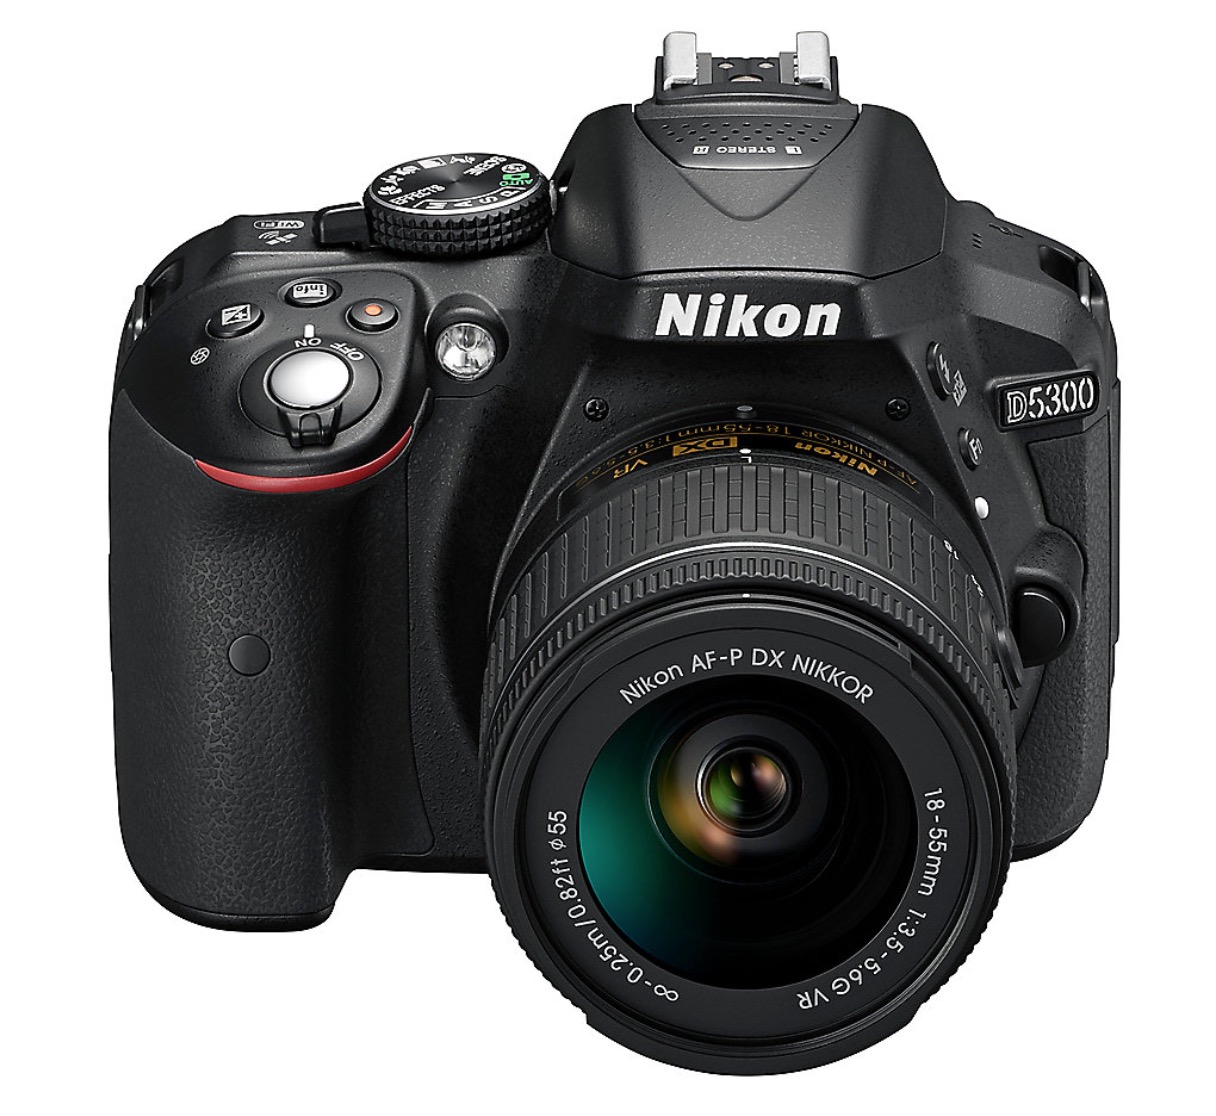 NIKON D5300 Spiegelreflexkamera Kit mit 18-55 mm Objektiv für nur 399,- Euro inkl. Versand